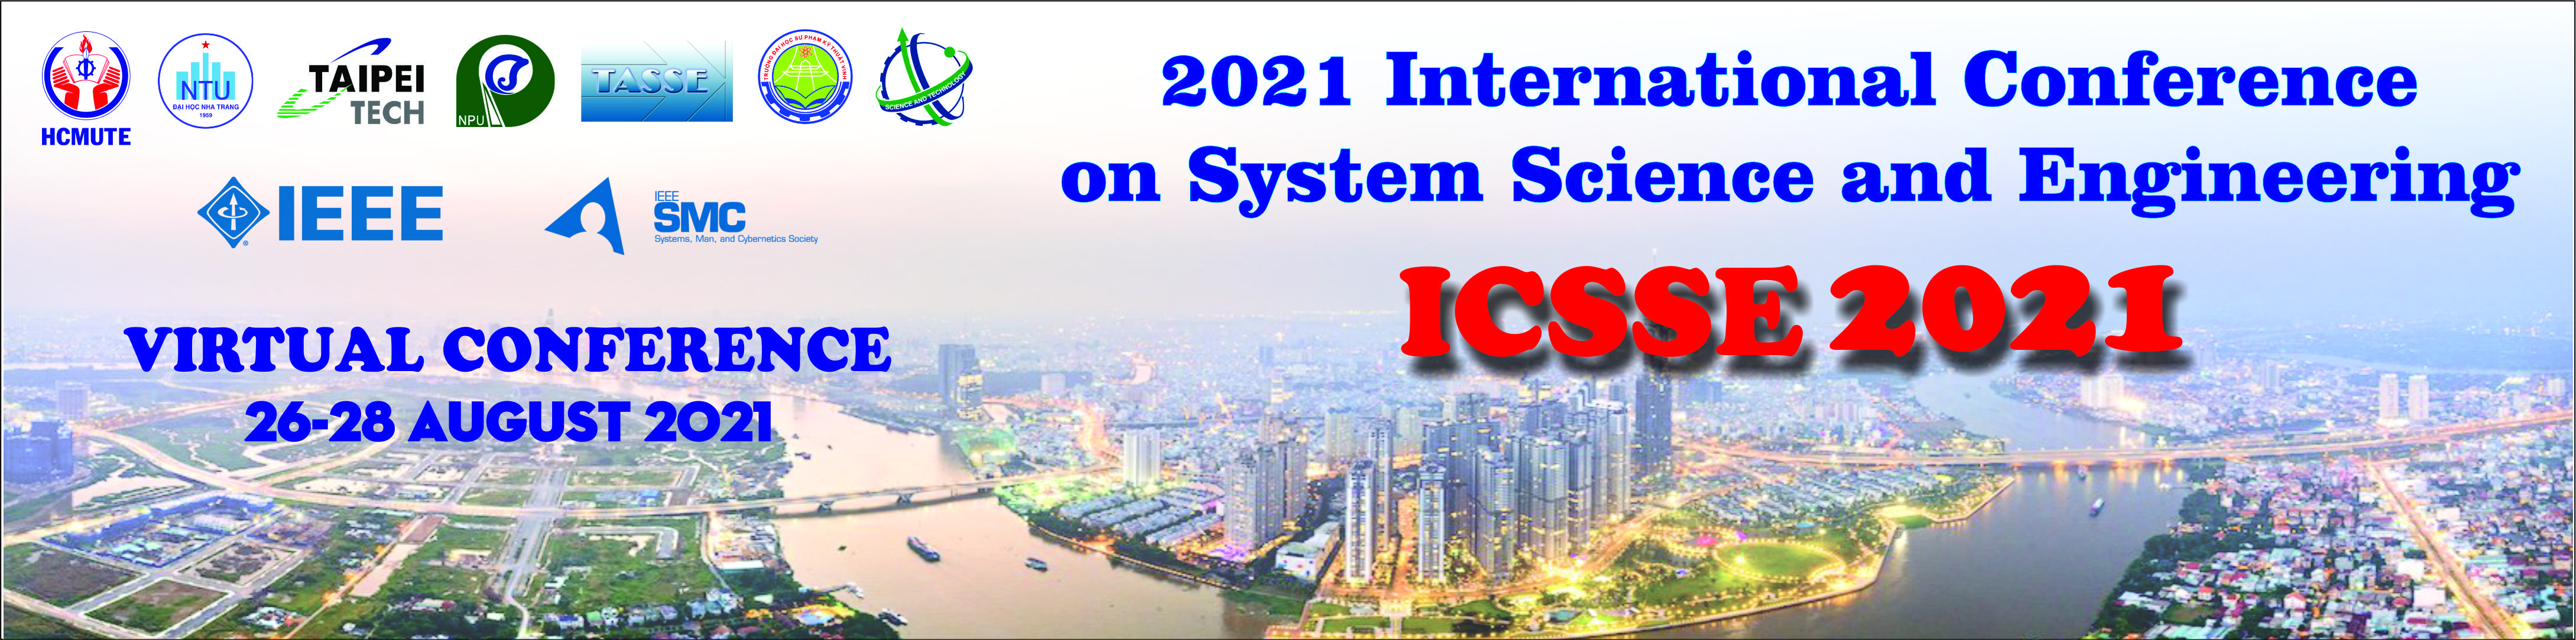 ICSSE 2021